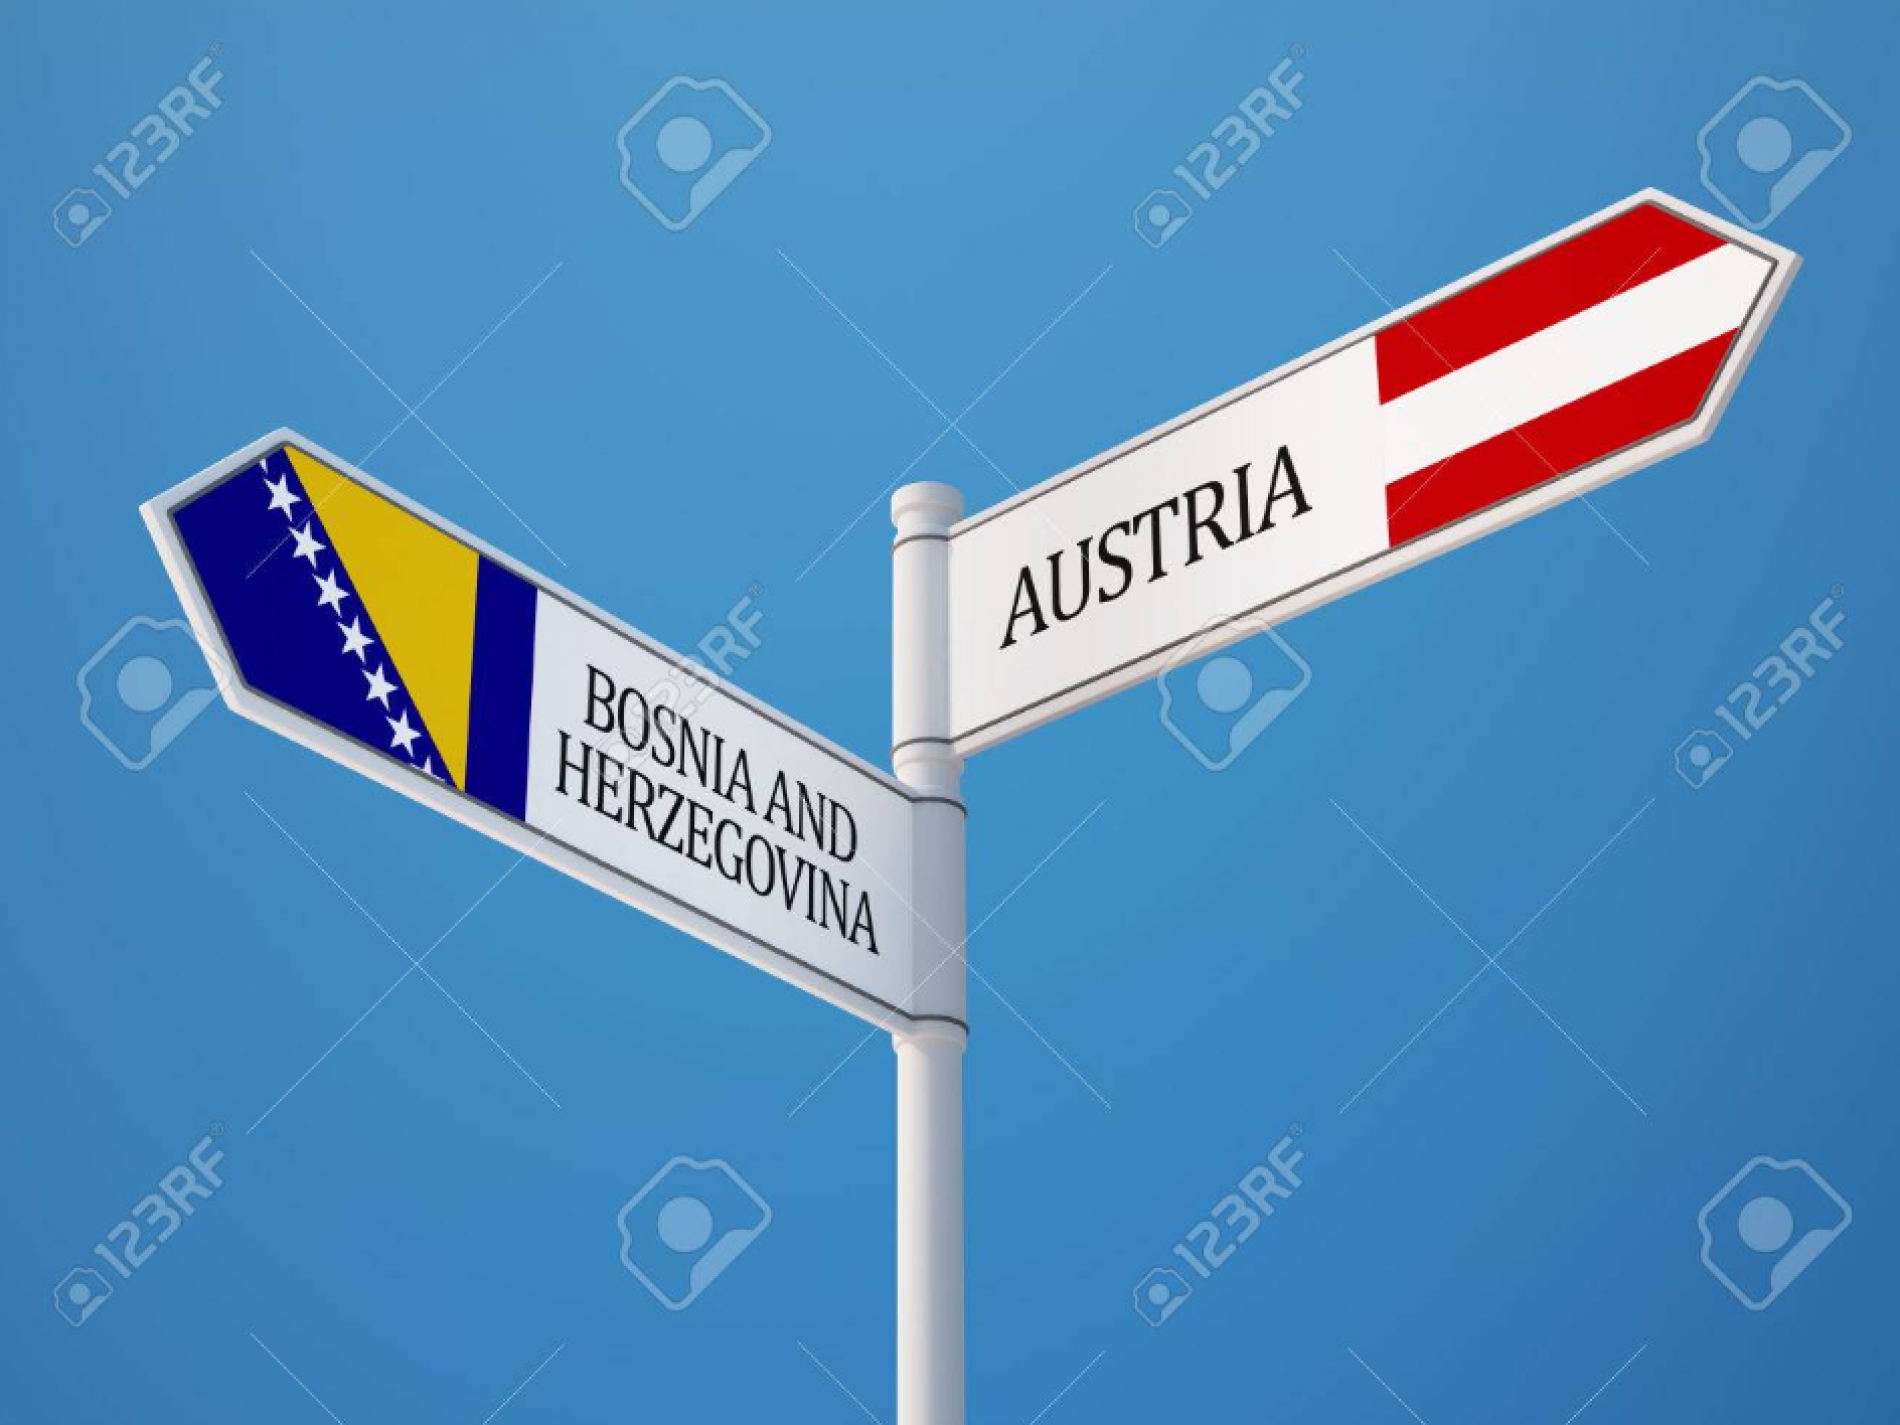 Veći izvoz od uvoza: Bosna i Hercegovina bilježi pozitivan trgovinski saldo sa Austrijom!